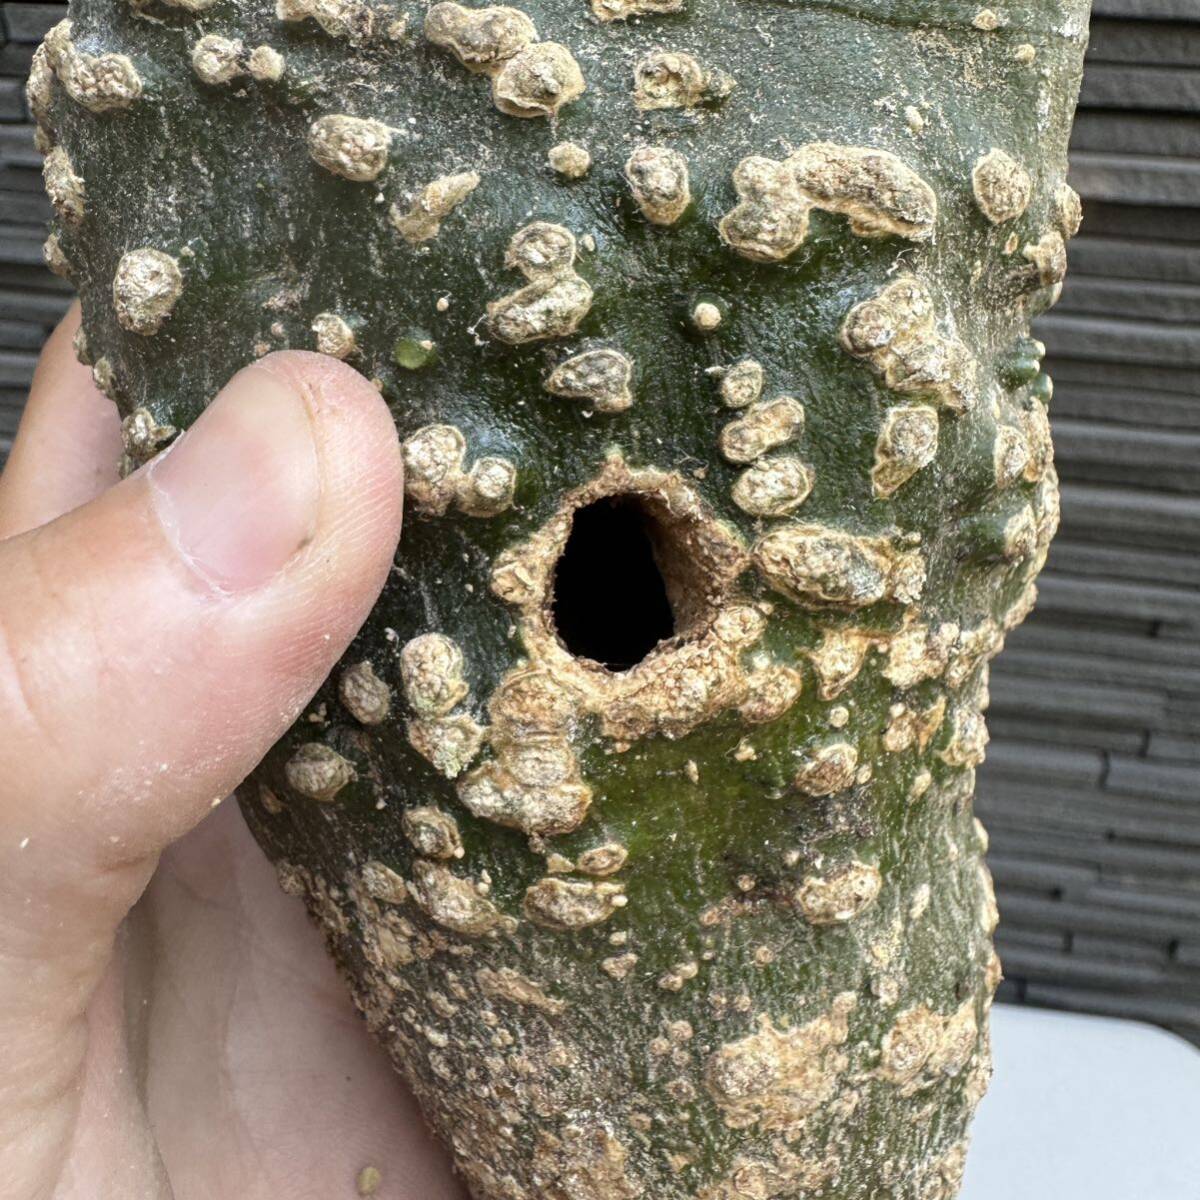 アデニア・グロボーサ ベアルート株 虫食い穴あり 塊根植物の画像4